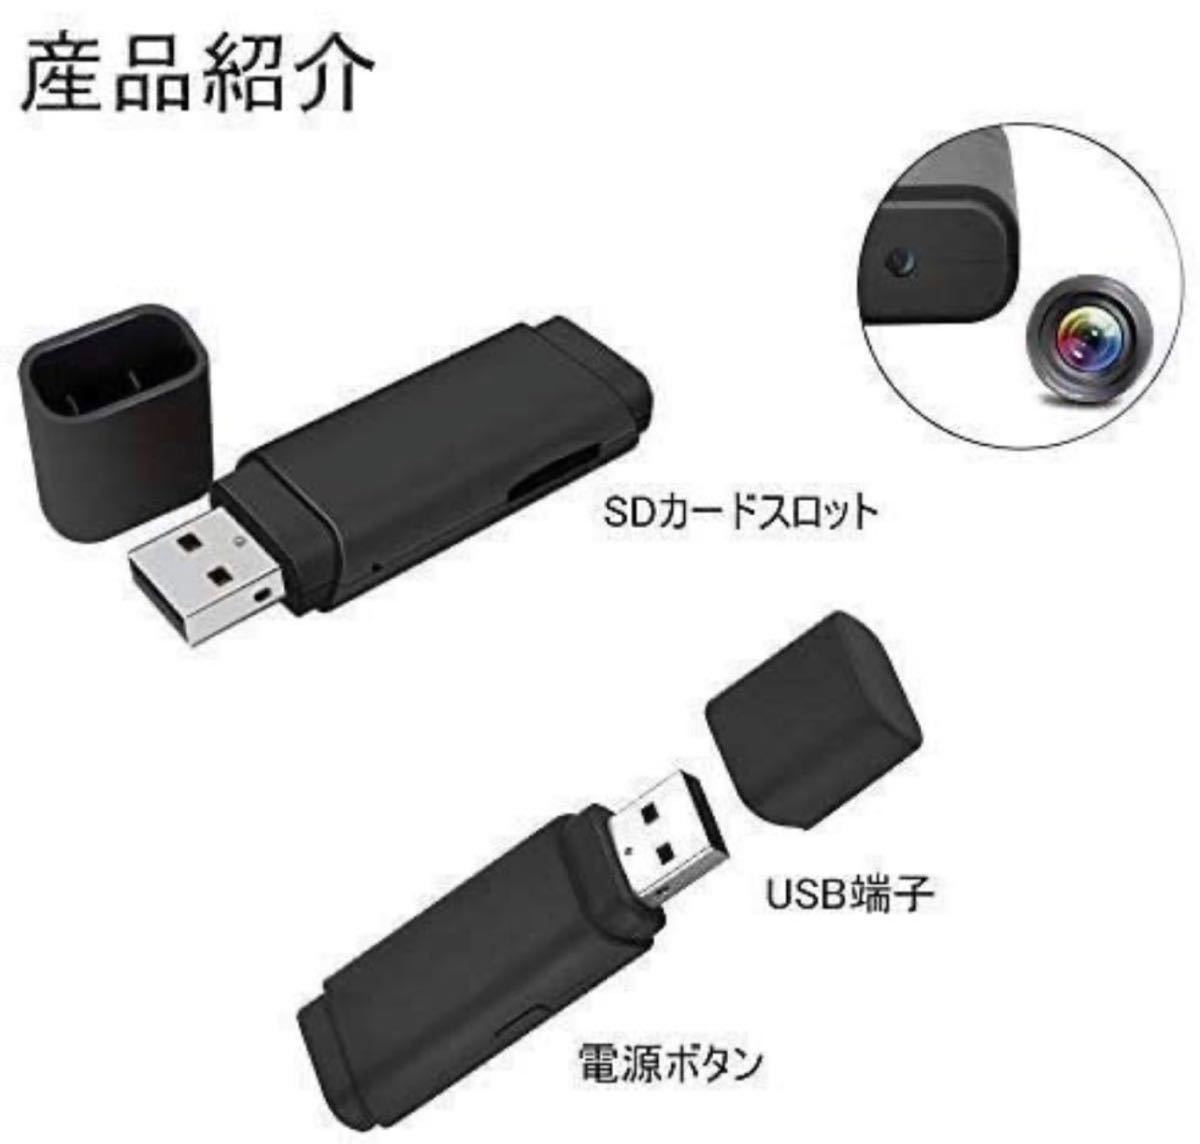 USBモリメ型カメラ 超小型隠しカメラ1080P HD 256Gまで 小型盗撮防犯監視ビデオカメラ